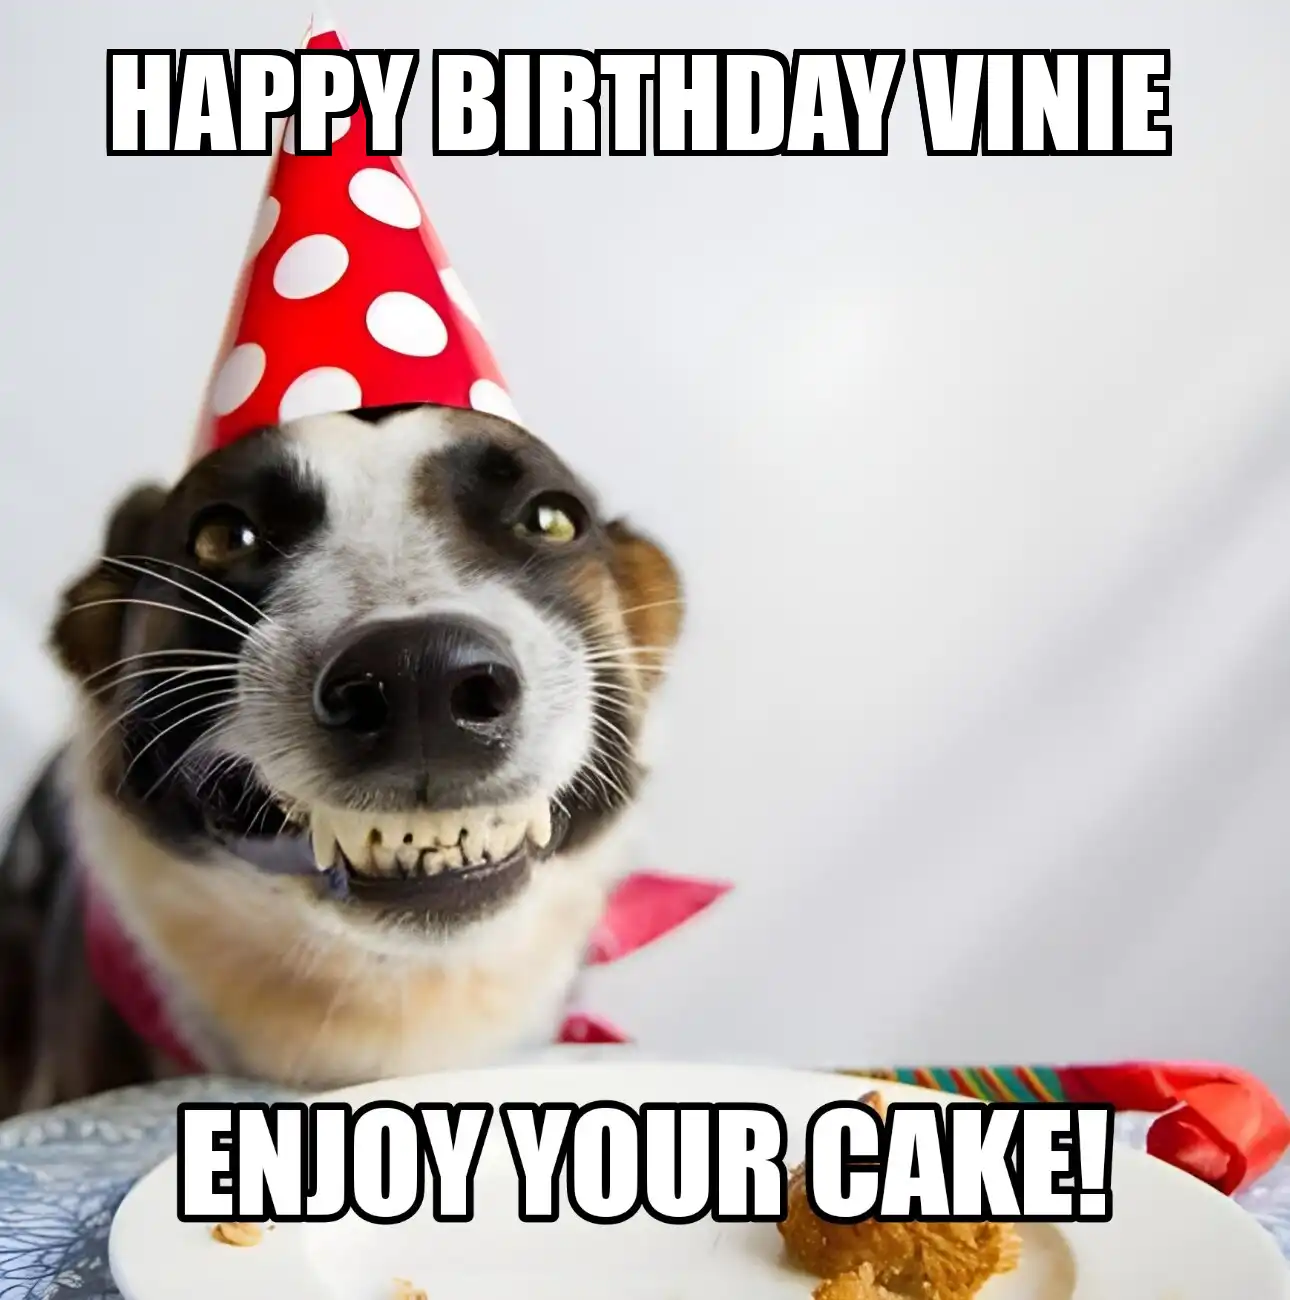 Happy Birthday Vinie Enjoy Your Cake Dog Meme